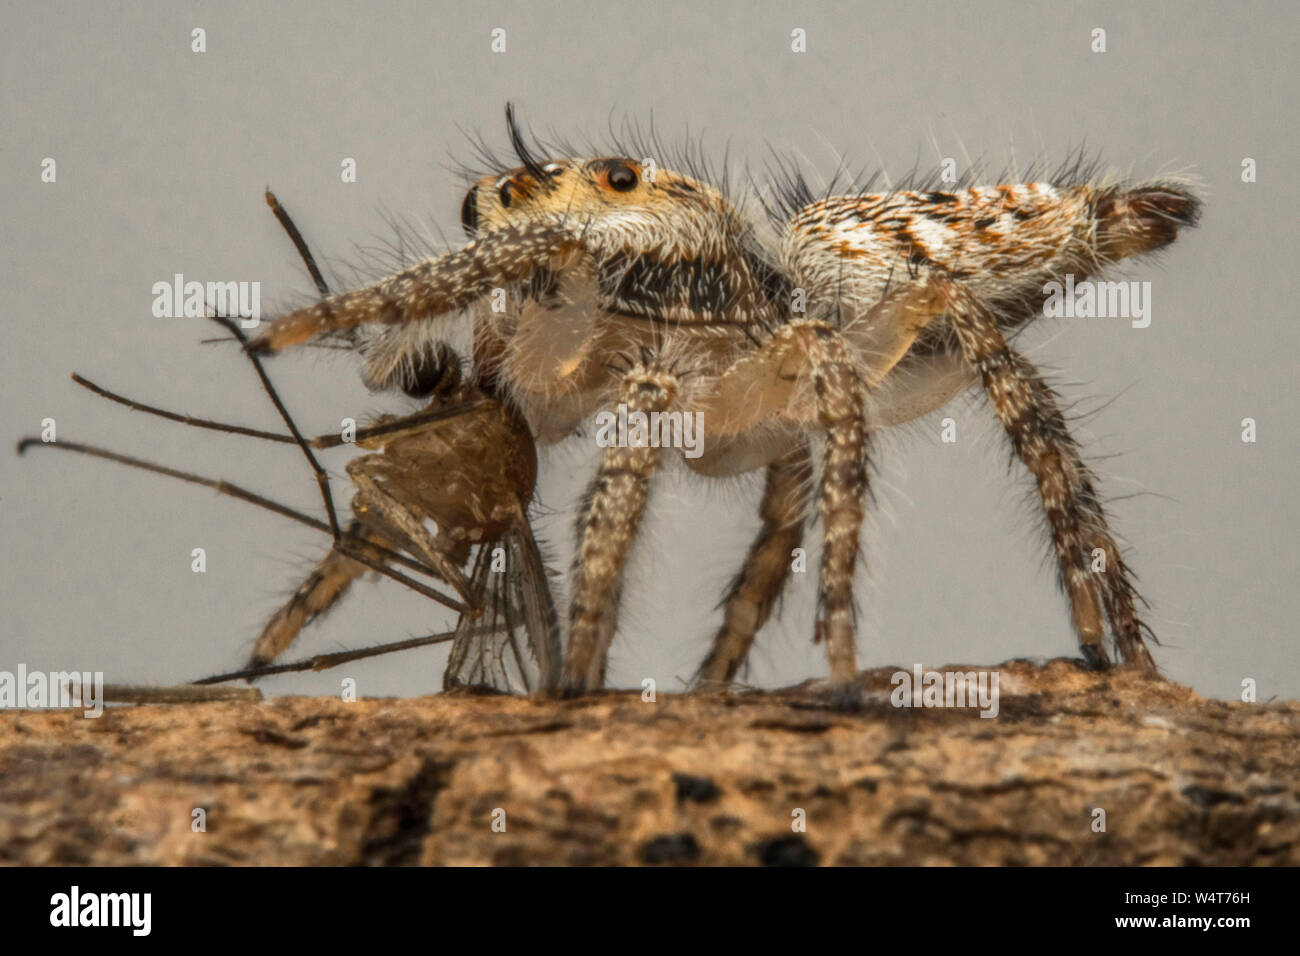 Araignée sauteuse avec un insecte mort, Indonésie Banque D'Images